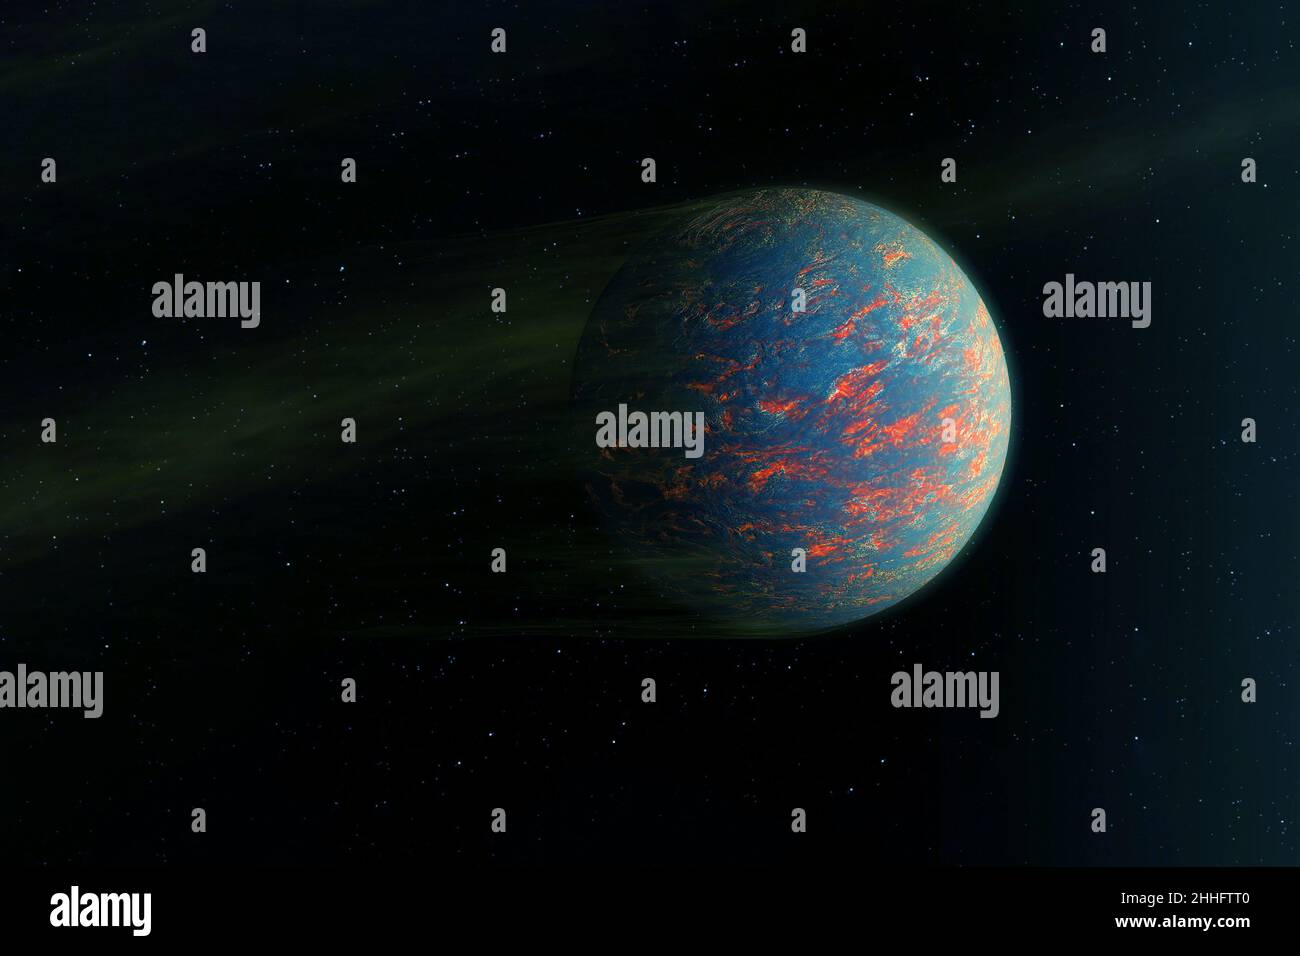 Entfernter Exoplanet. Elemente dieses Bildes, die von der NASA eingerichtet wurden. Hochwertige Fotos Stockfoto